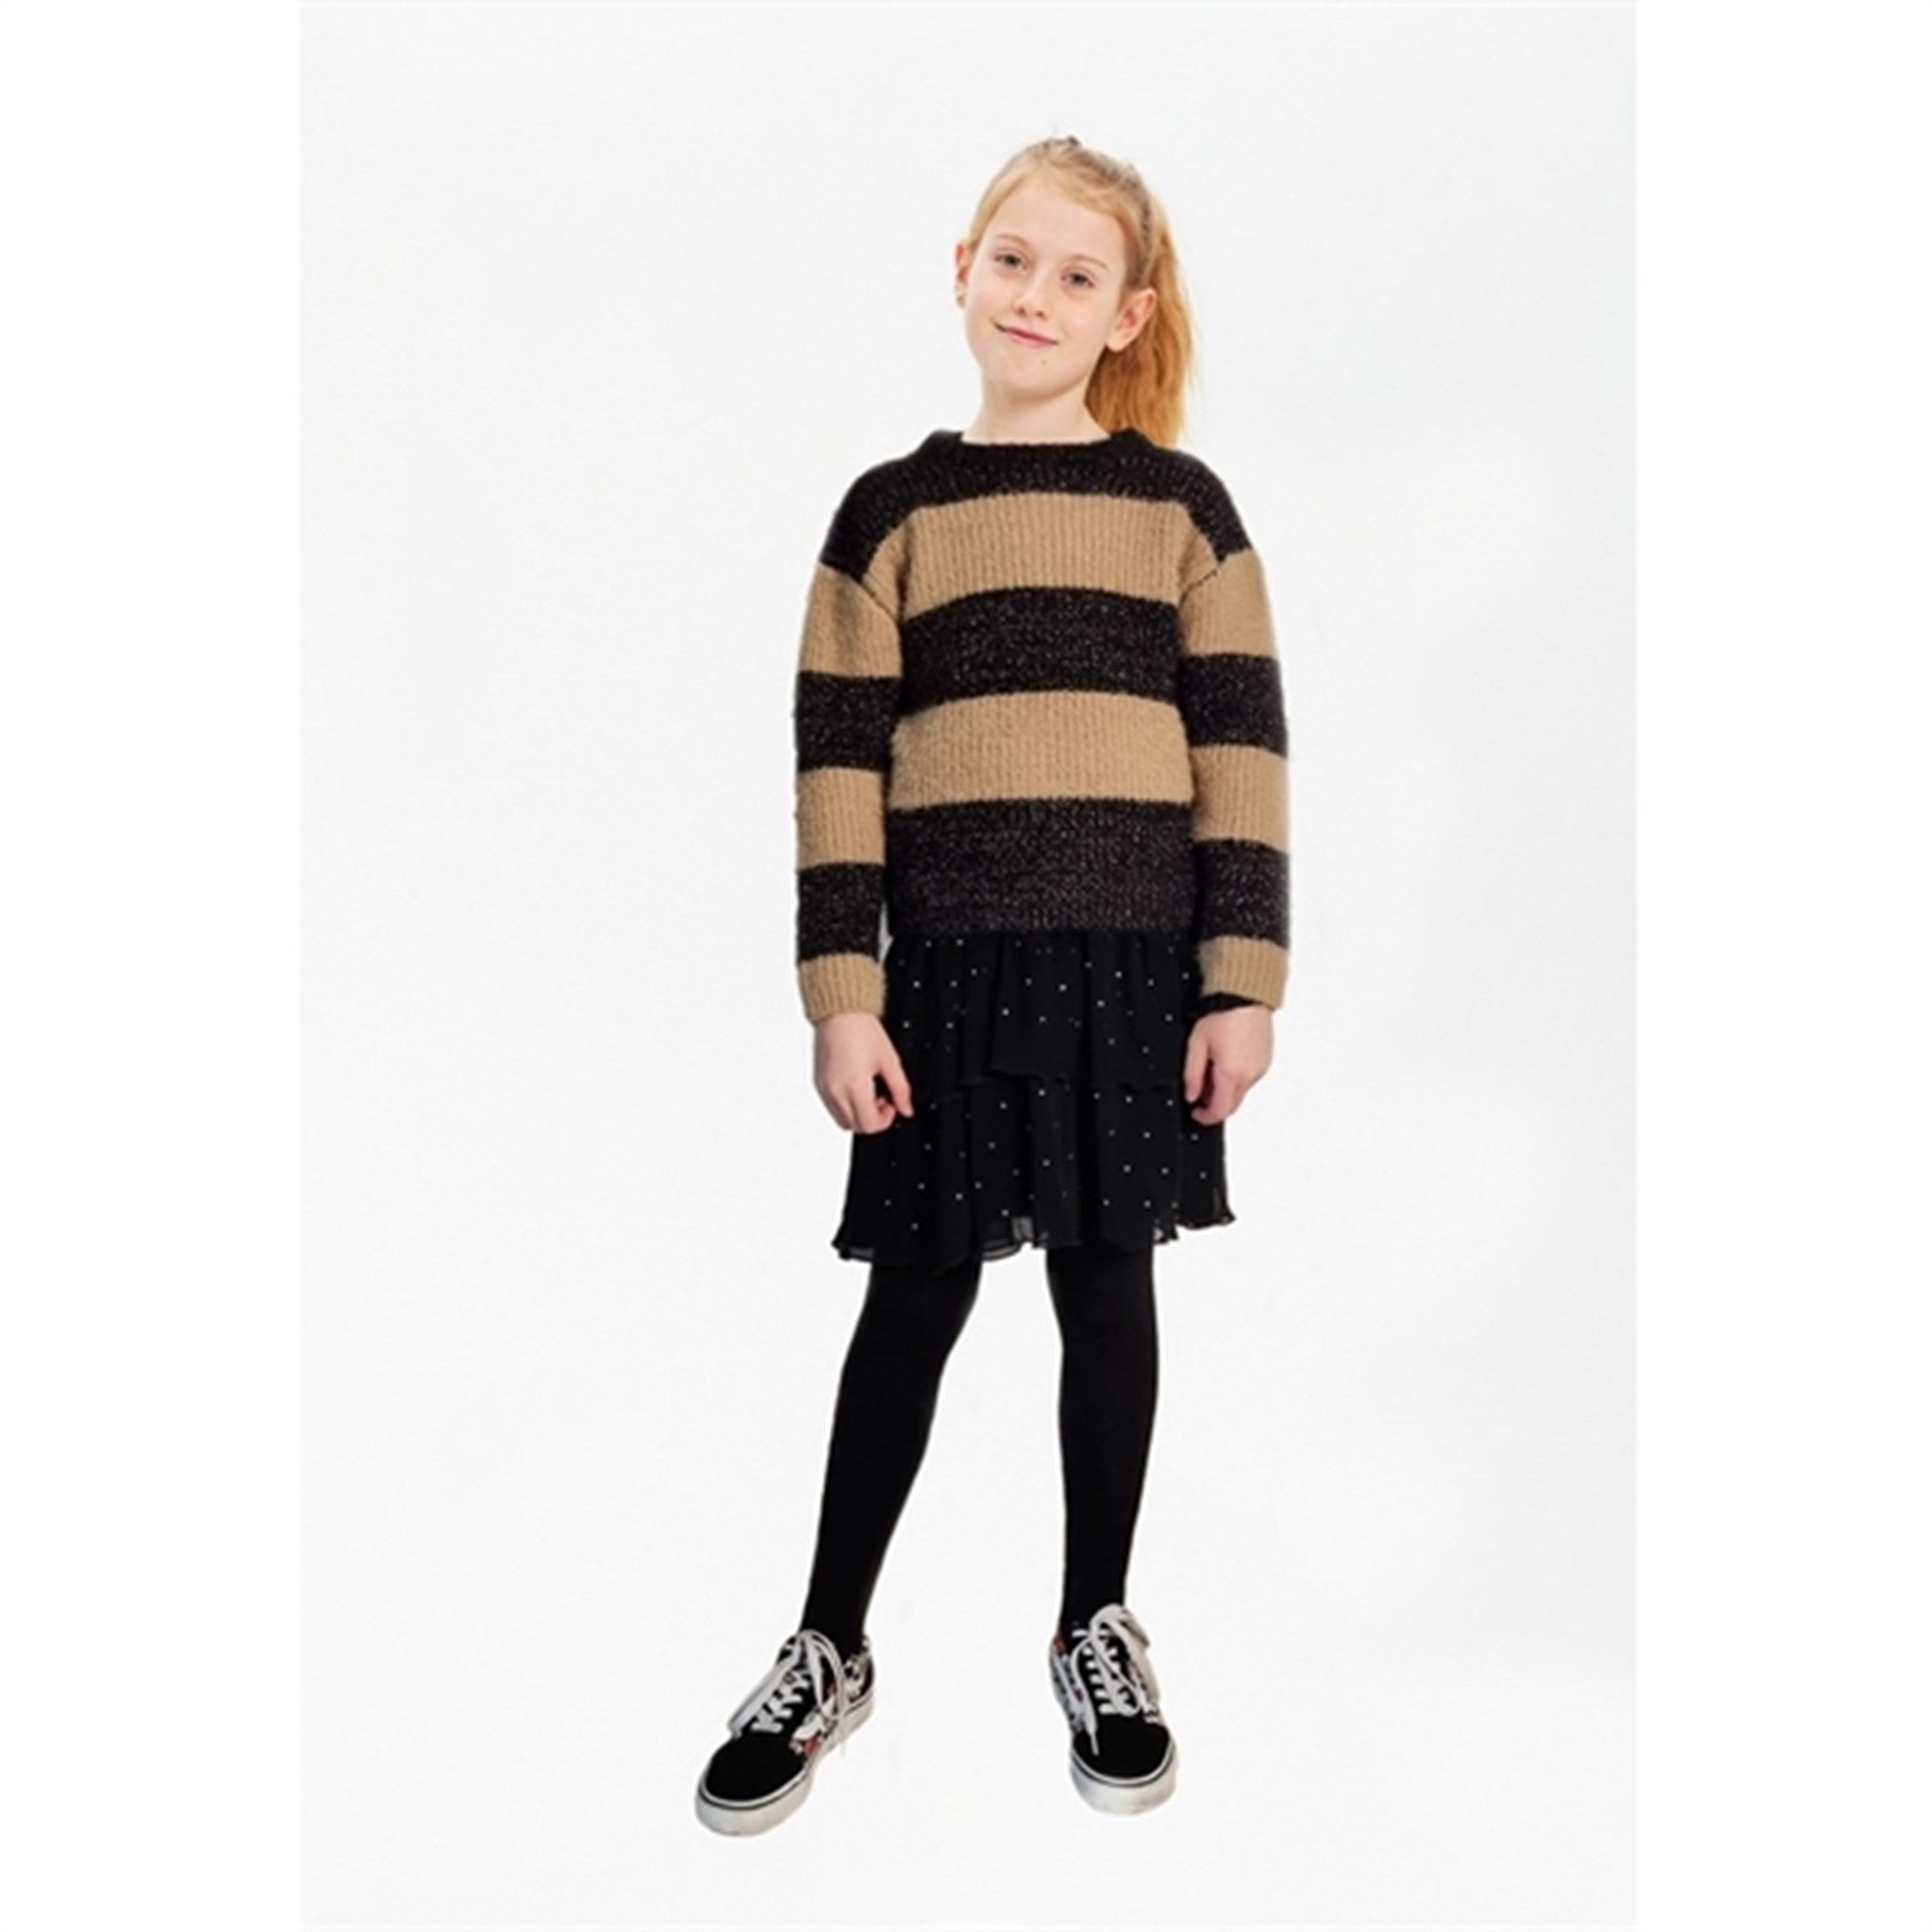 The New Black Beauty Isalina Knit Pullover 2